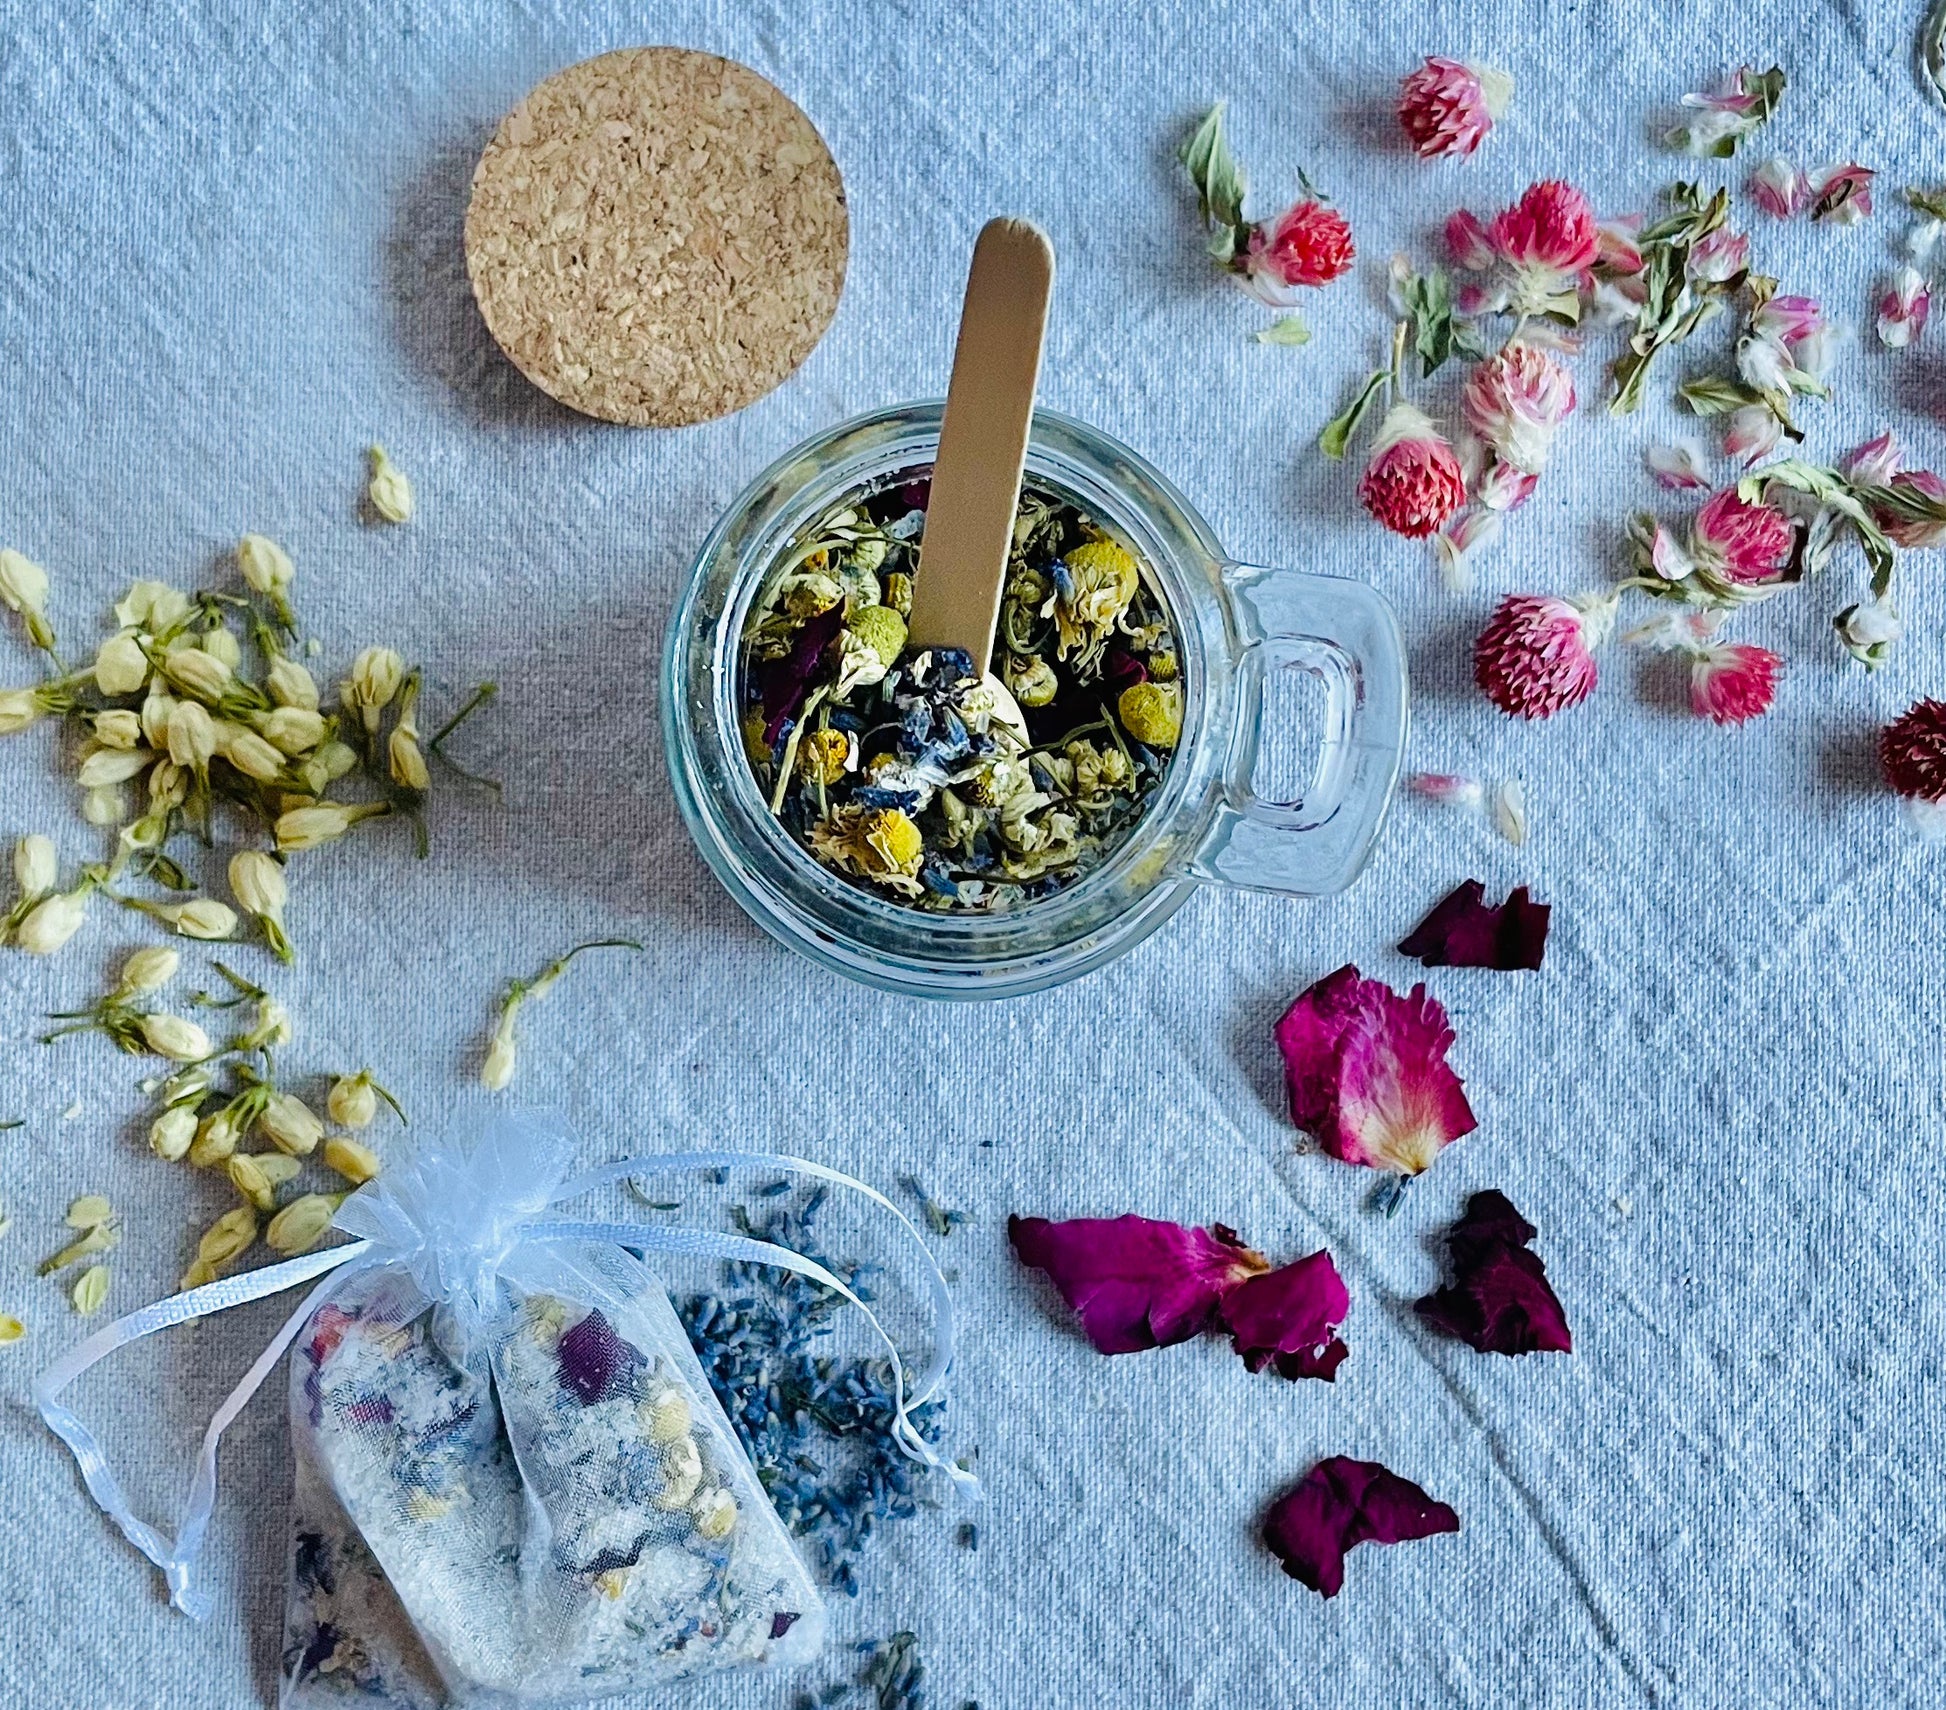 Moon Magic Bath Tea – The Rare Blooms